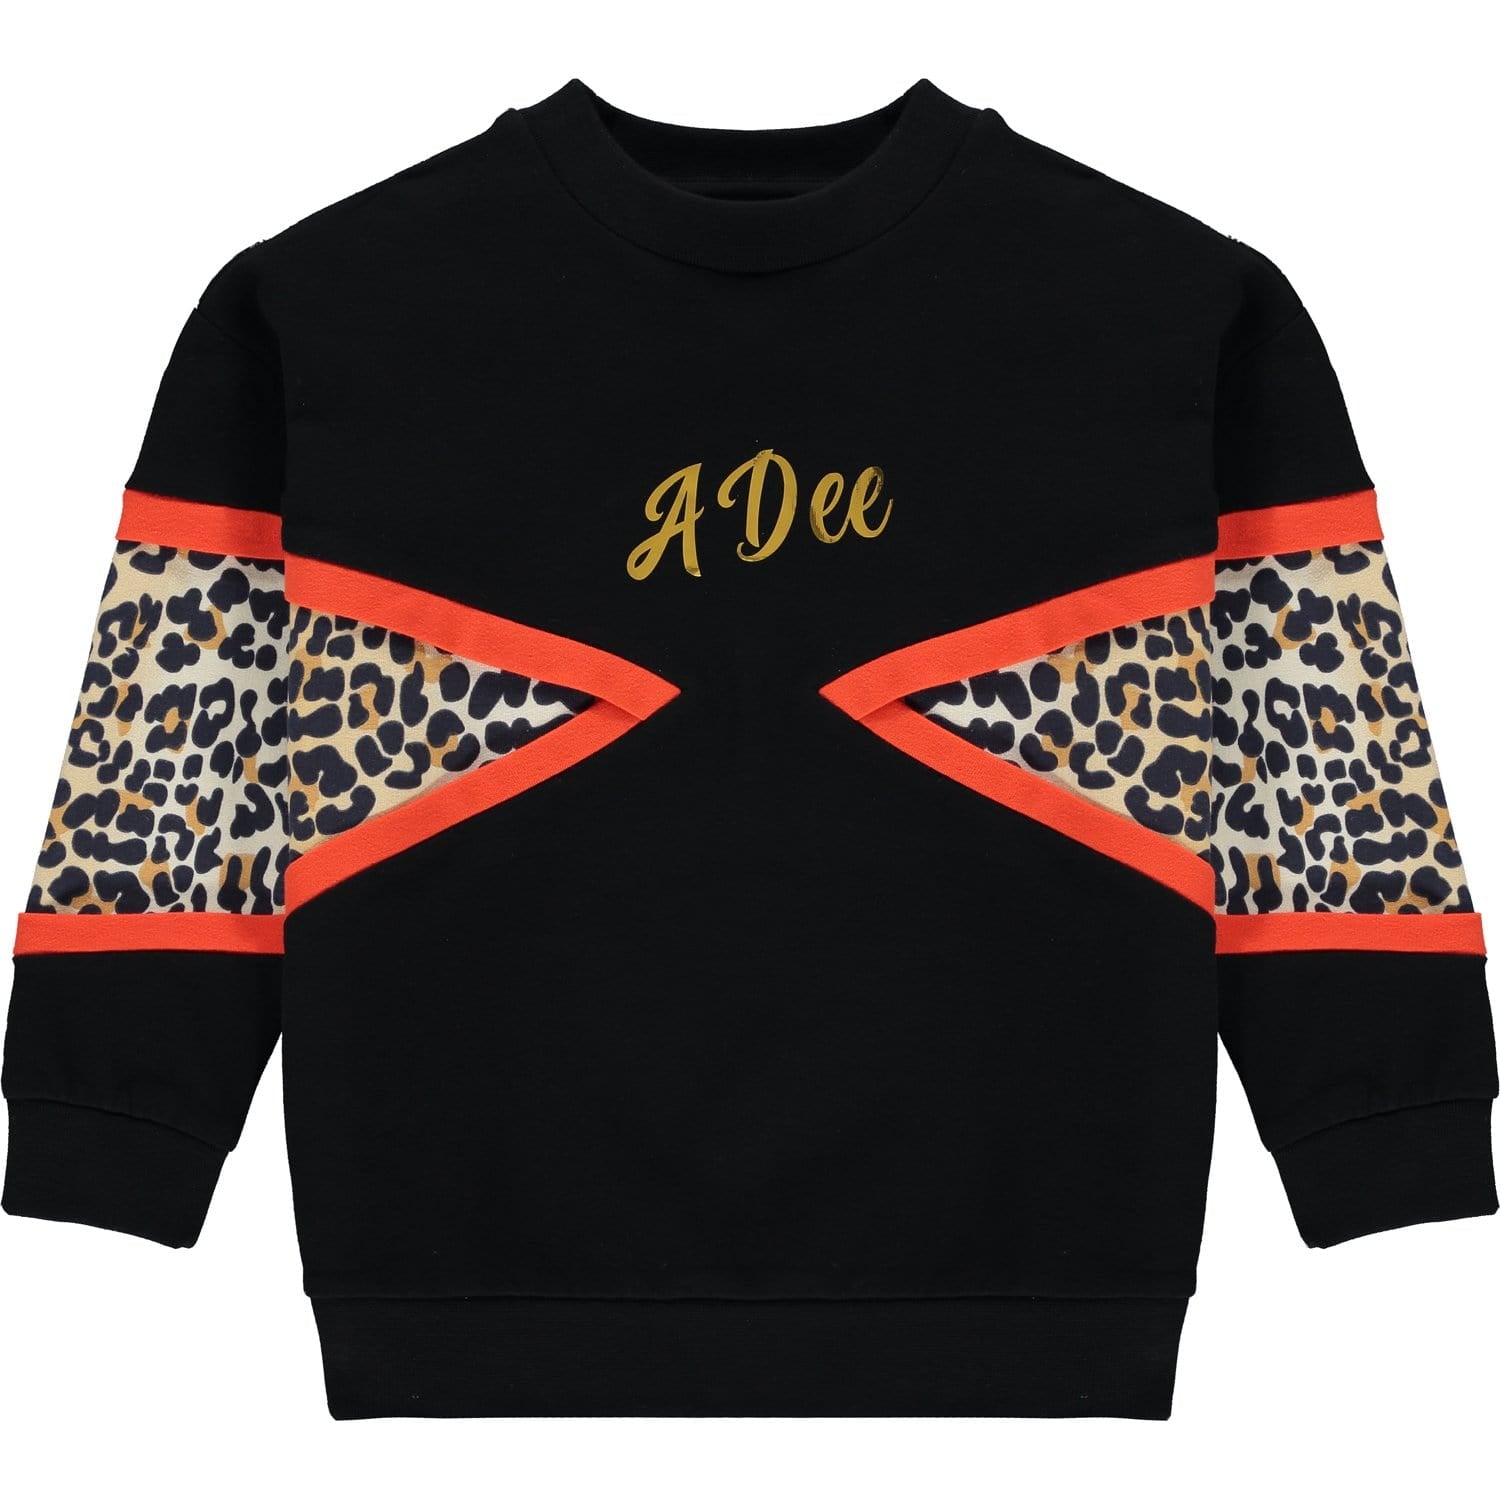 A DEE - Leopard Panel Sweatshirt Set - Black